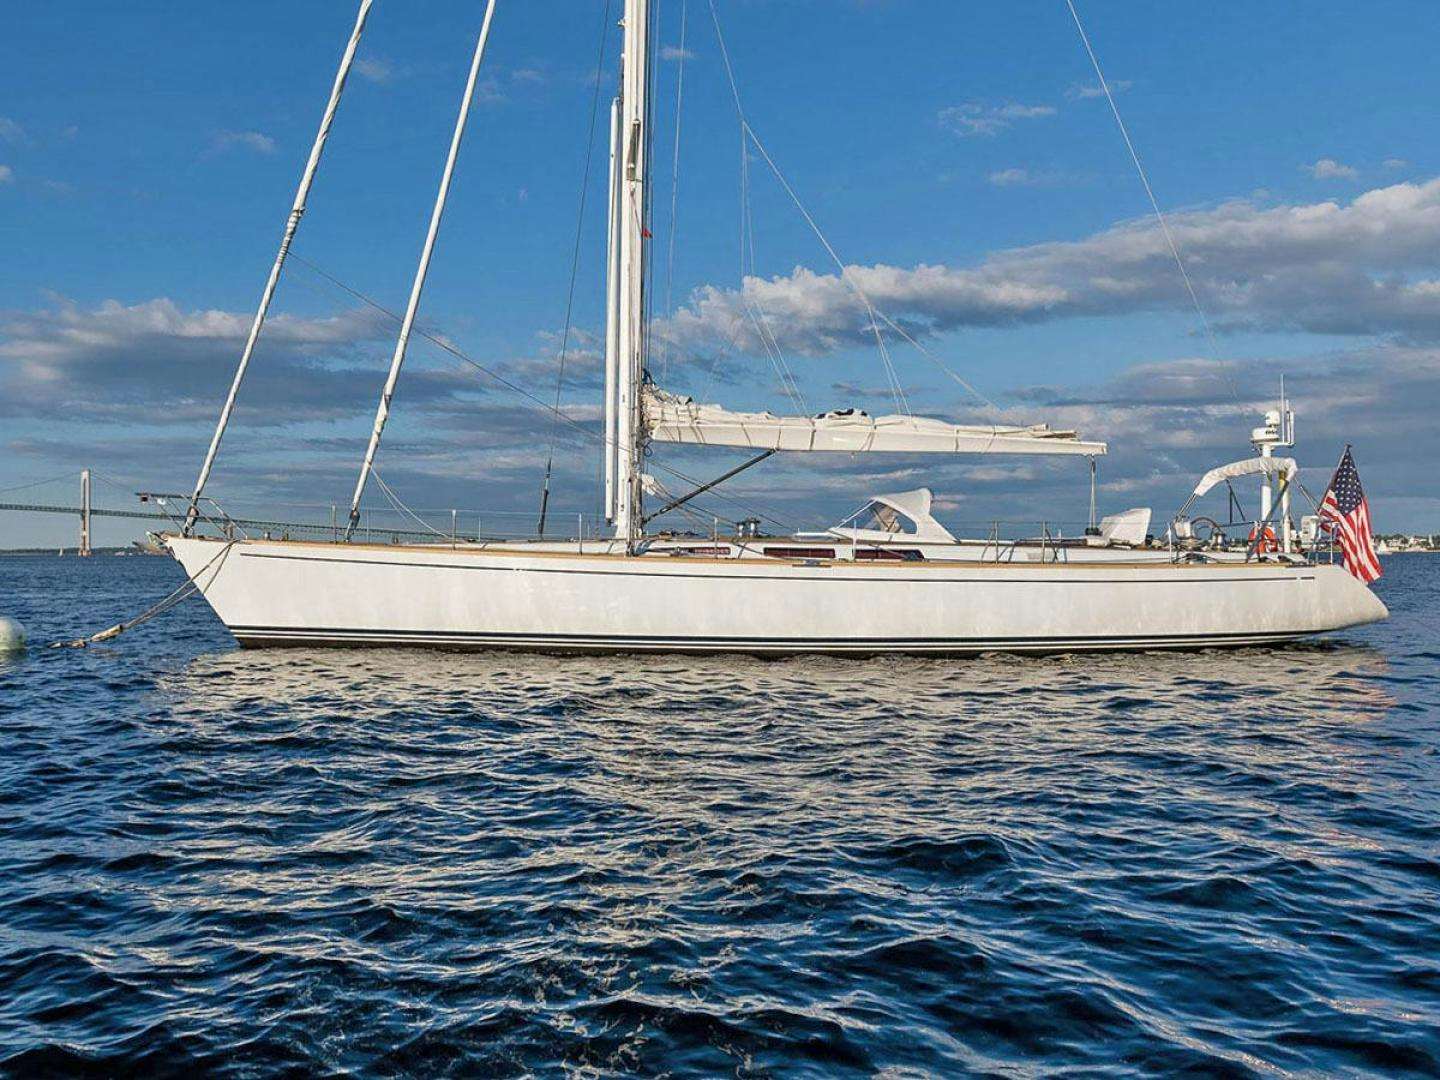 Venturous
Yacht for Sale